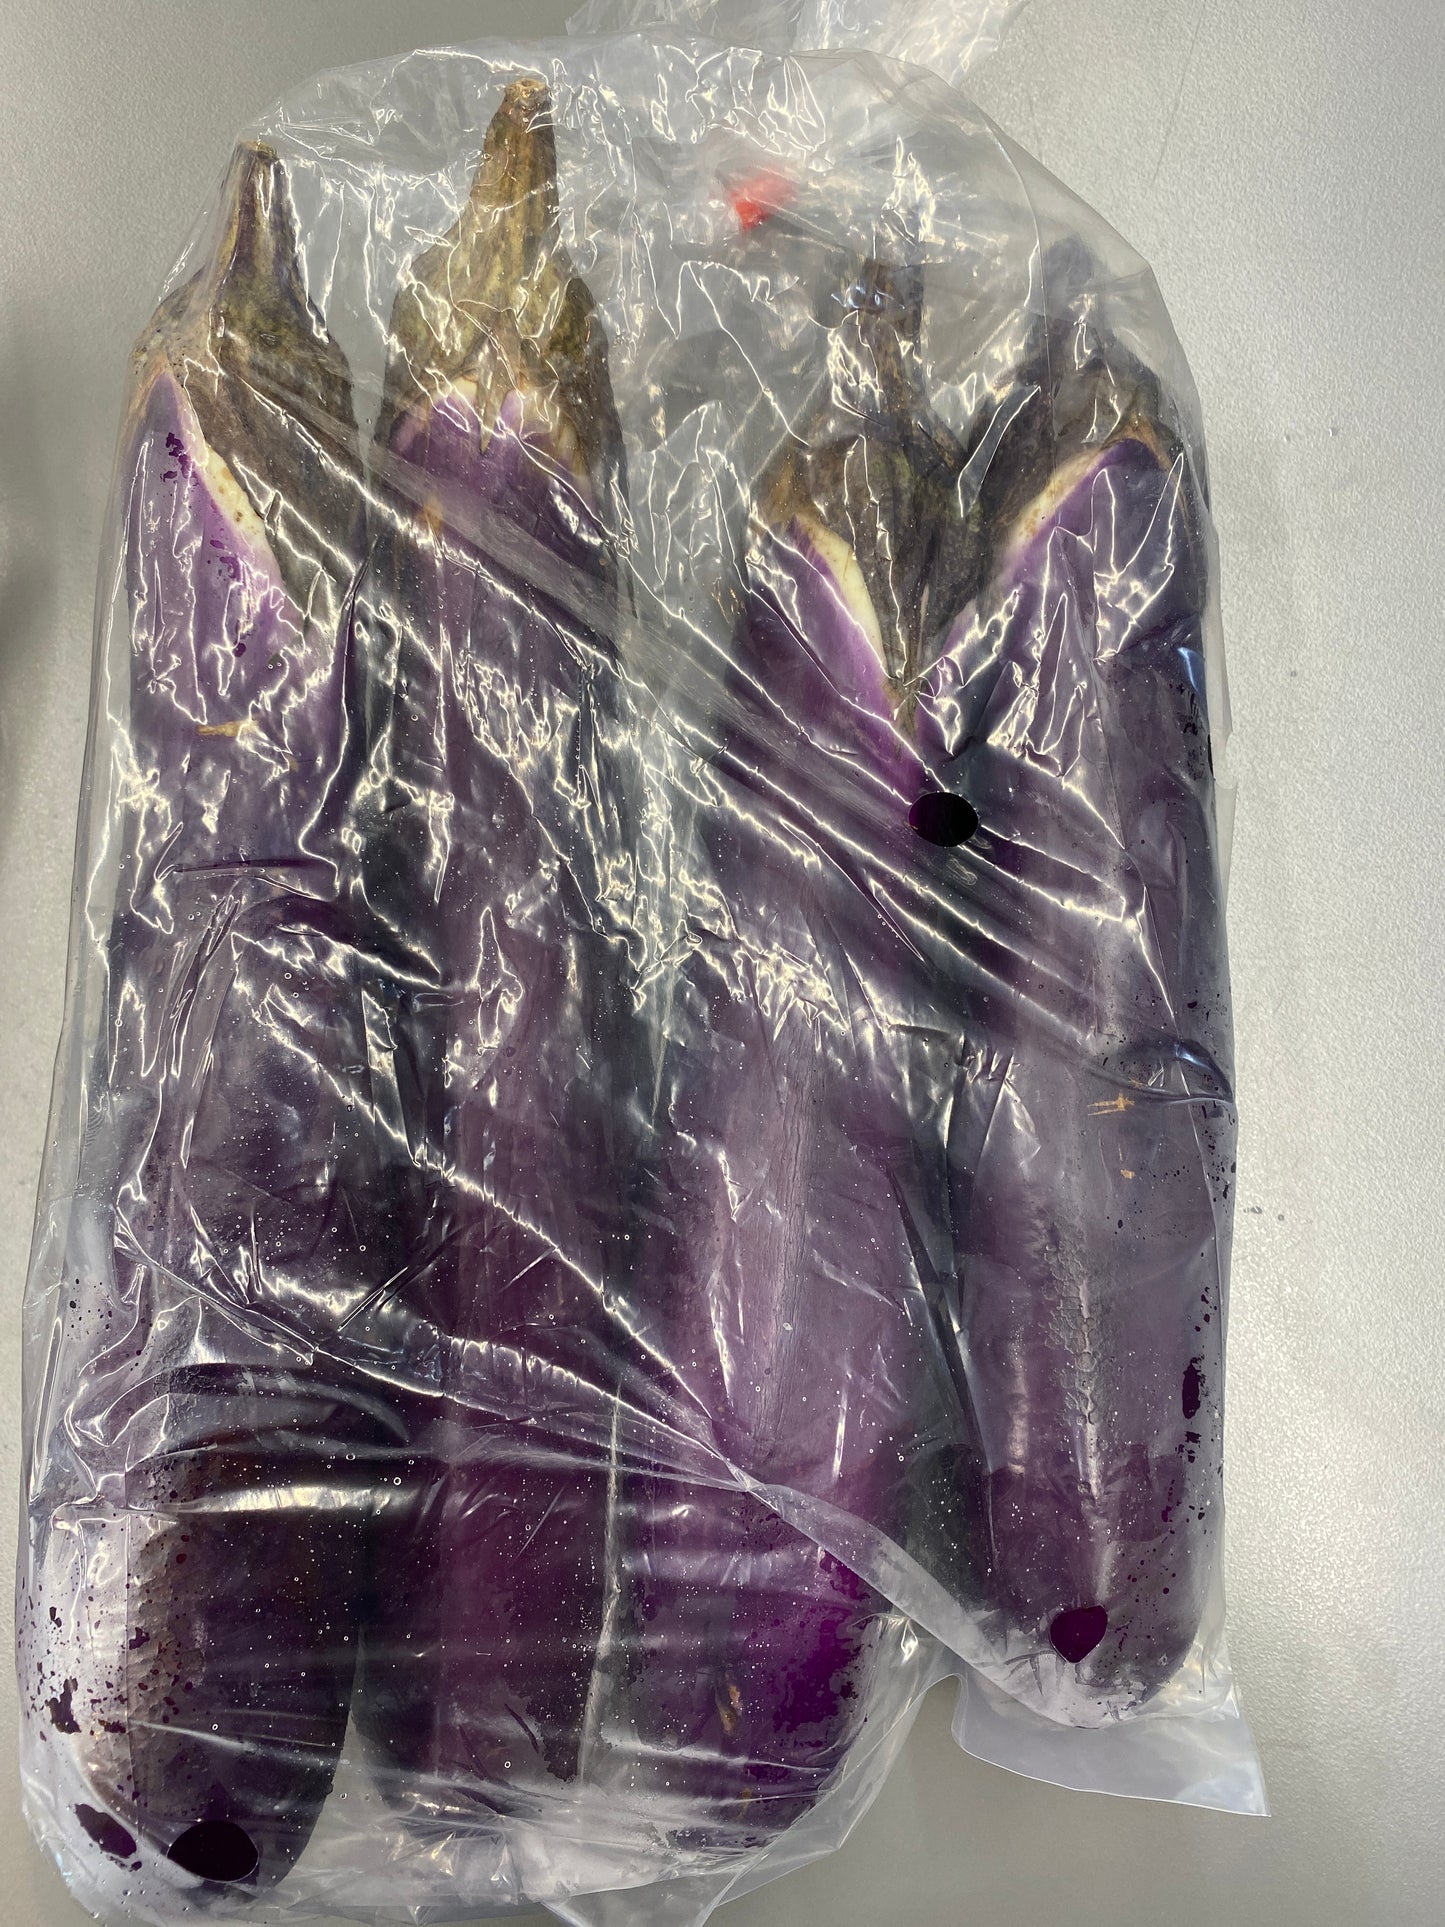 Eggplant (2-3pcs per bag)